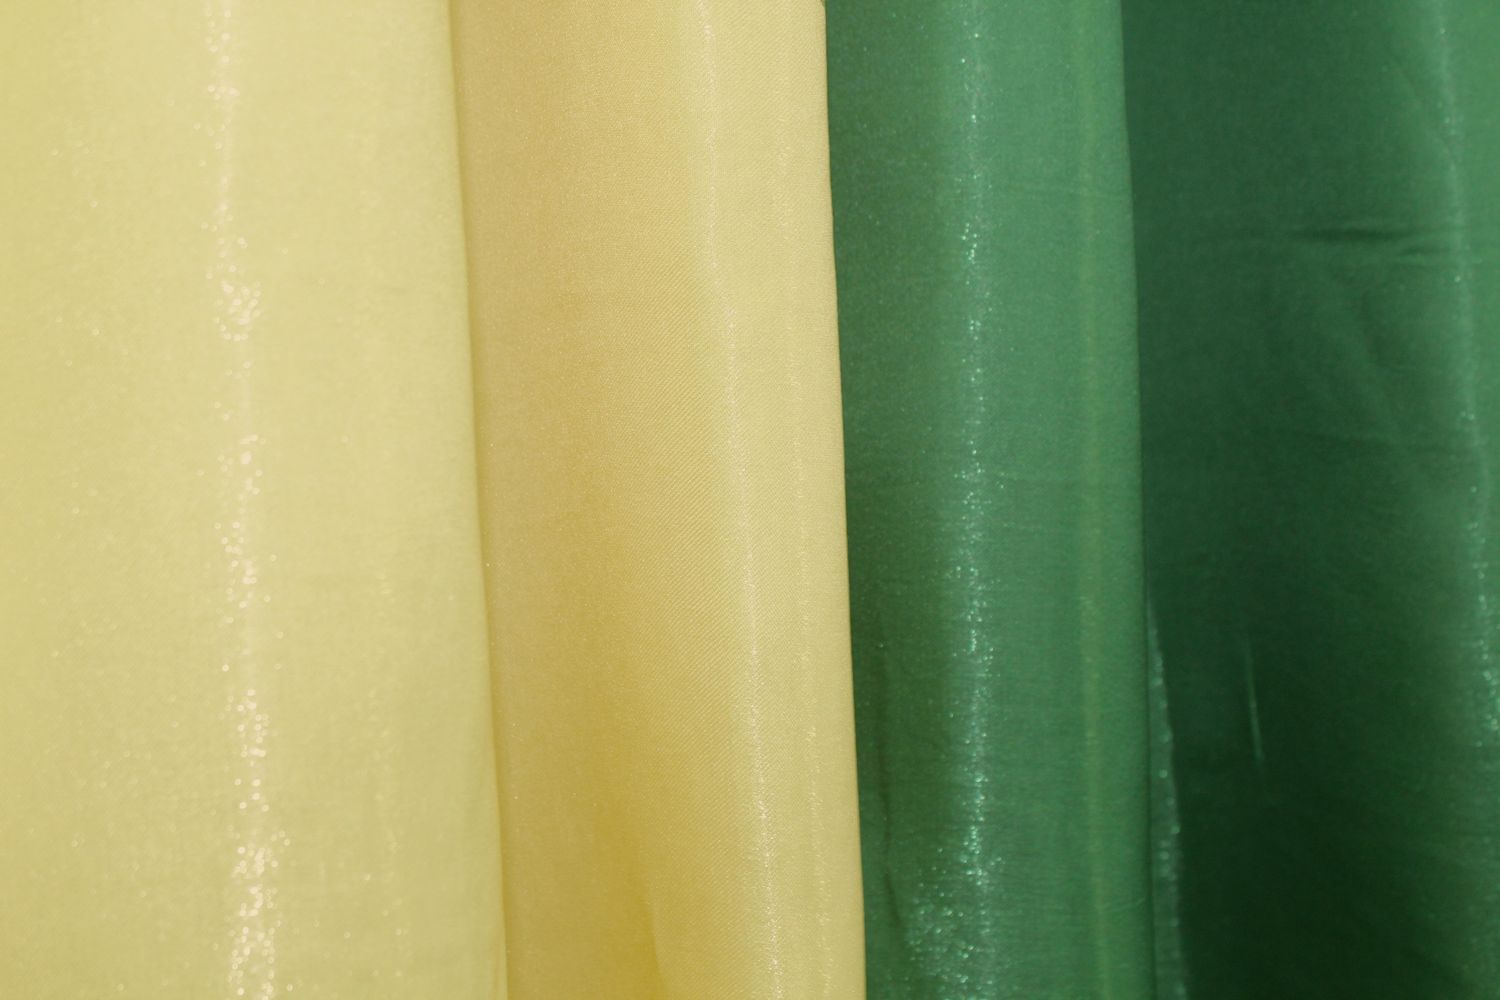 Комбинированные шторы из ткани атлас монорей цвет зеленый с желтым 014дк (851-802ш), Зеленый с желтым, Комплект штор (2шт. 1,5х2,5м.), Классические, Без ламбрекена, Длинные, 1,5 м., 2,5 м., 150, 250, 1,5 - 2,5 м., В комплекте 2 шт., Тесьма